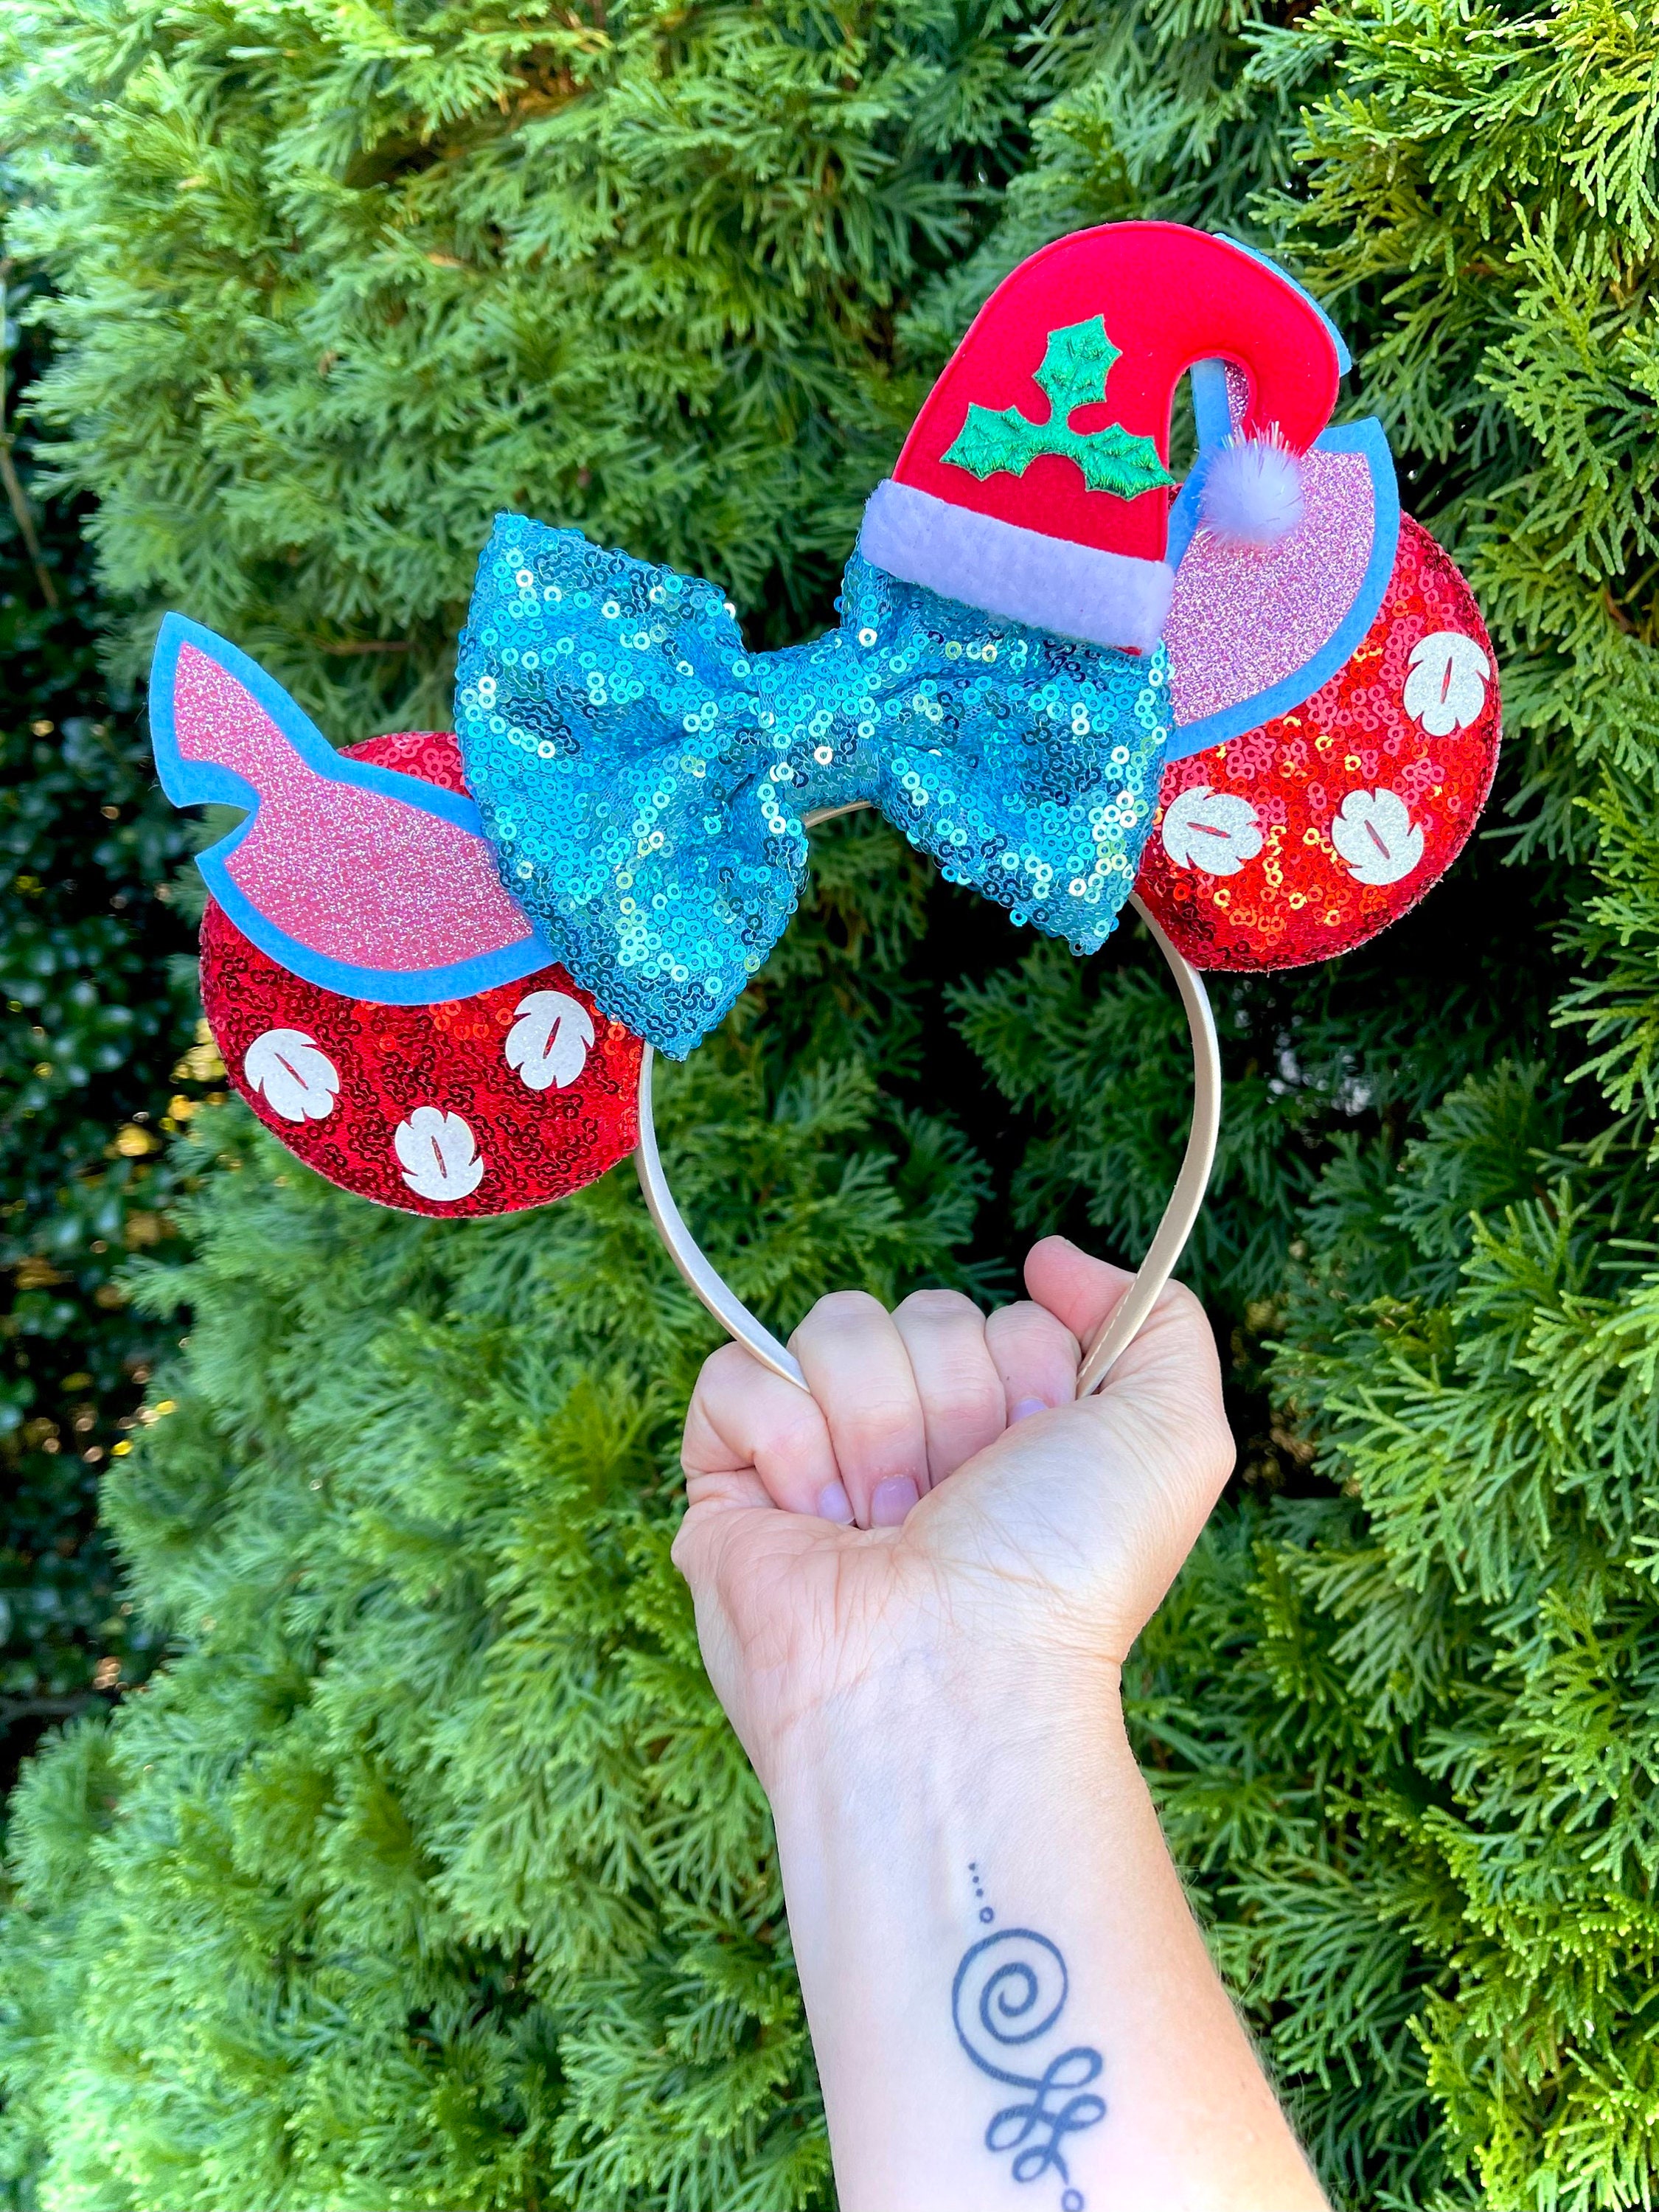 Disney - Lilo & Stitch - Stitch Ears Christmas Stocking - Toys